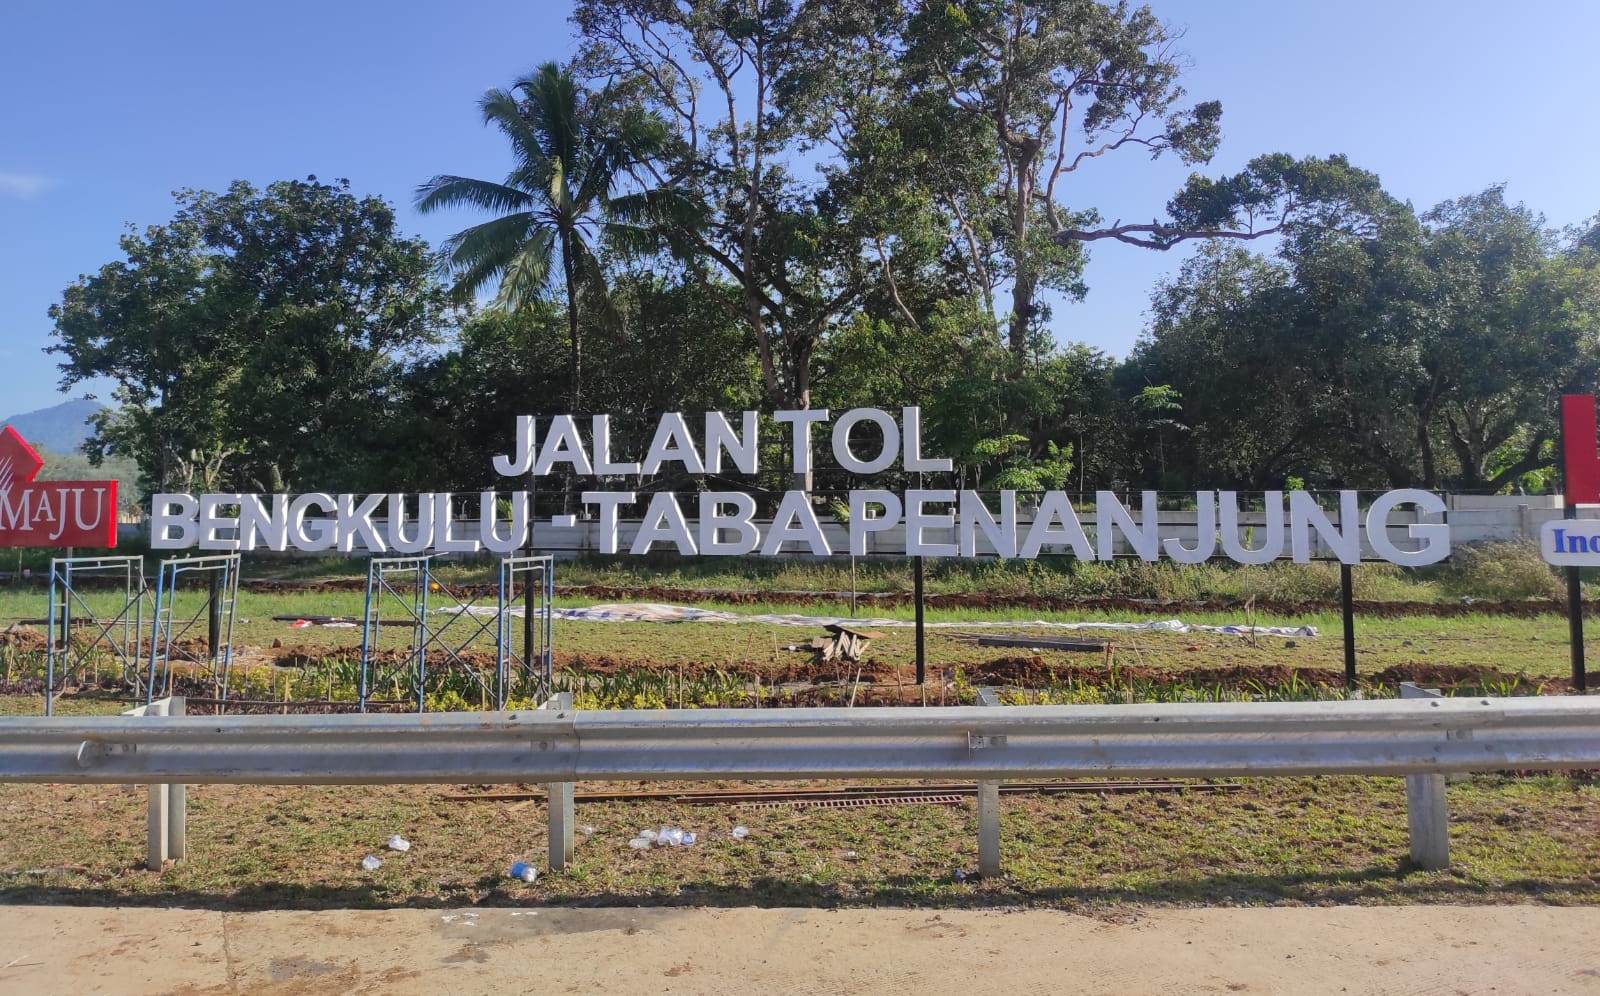 Tol Bengkulu-Taba Penanjung di Resmikan Hari Ini Oleh Presiden Jokowi